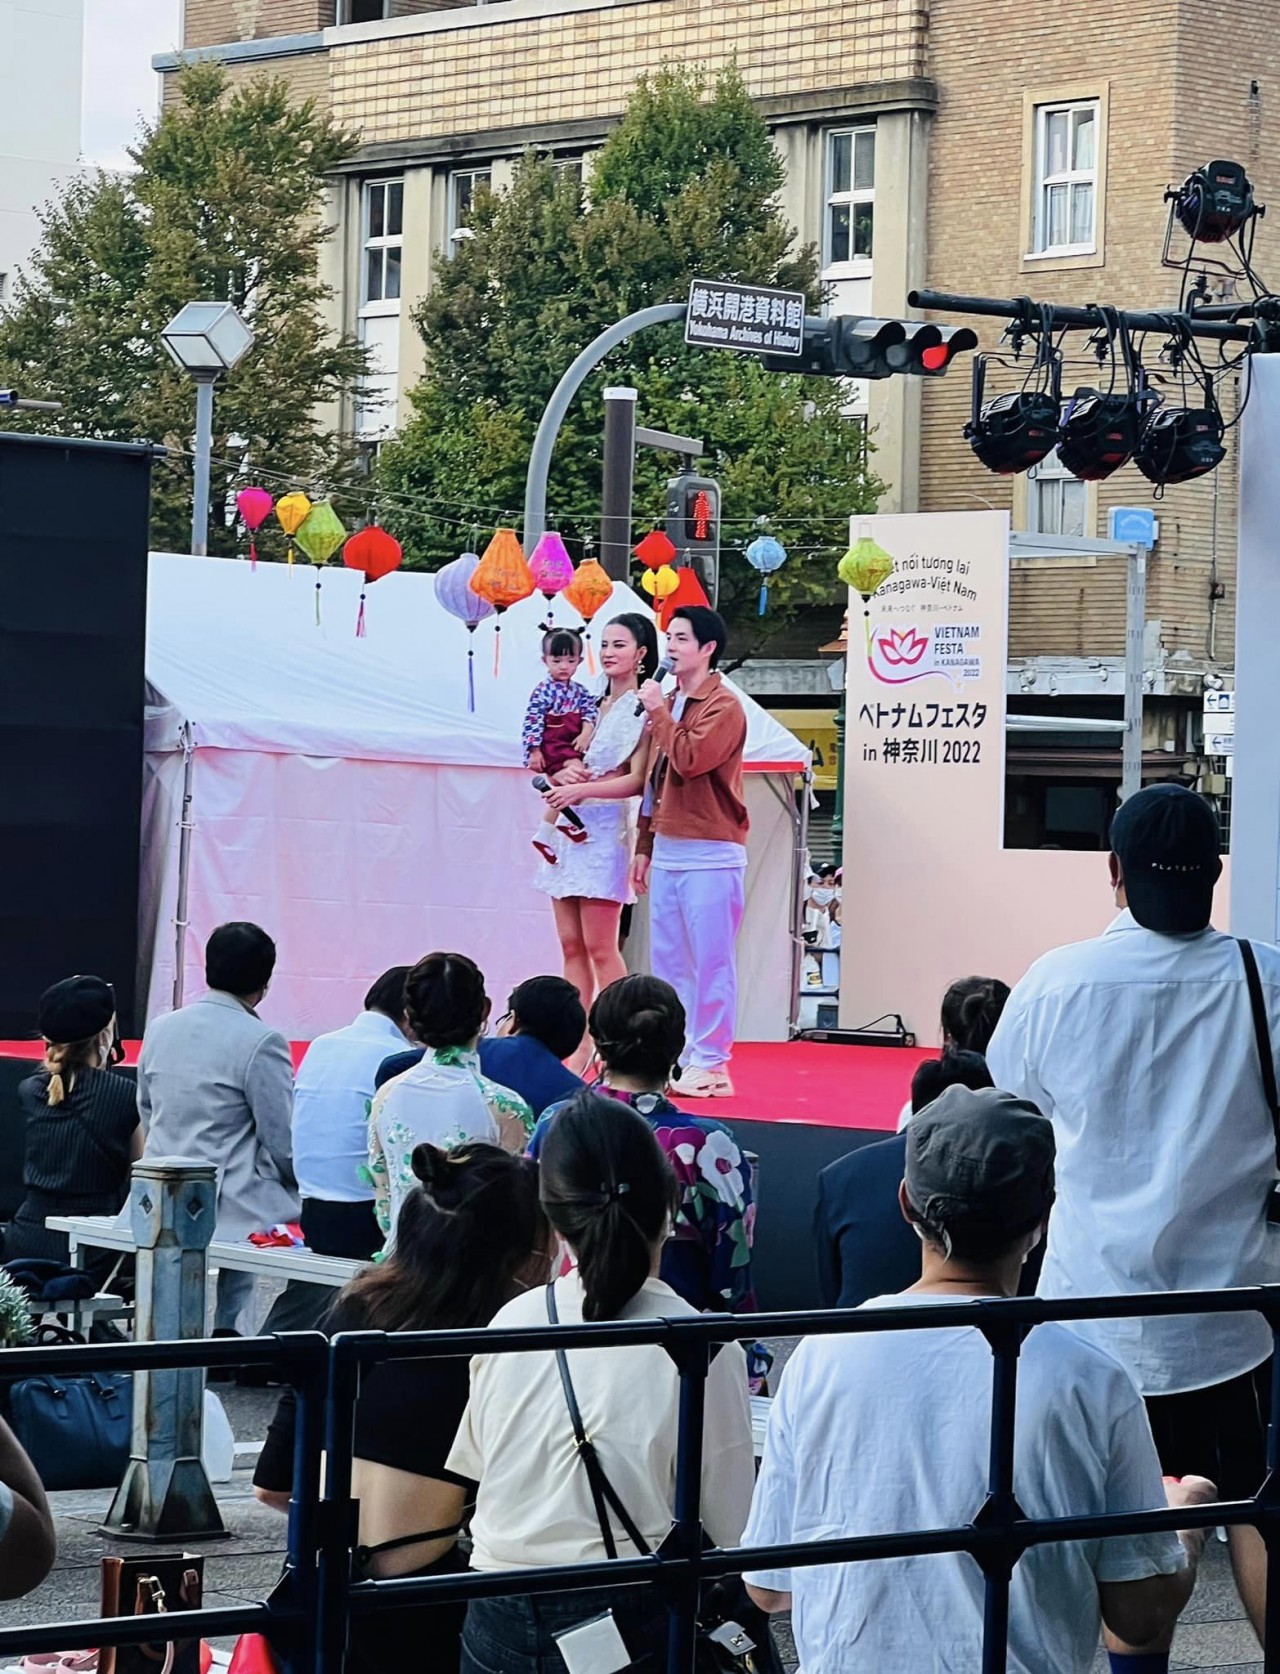 Hơn 30.000 người tham dự Vietnam Festival tại Kanagawa, Nhật Bản